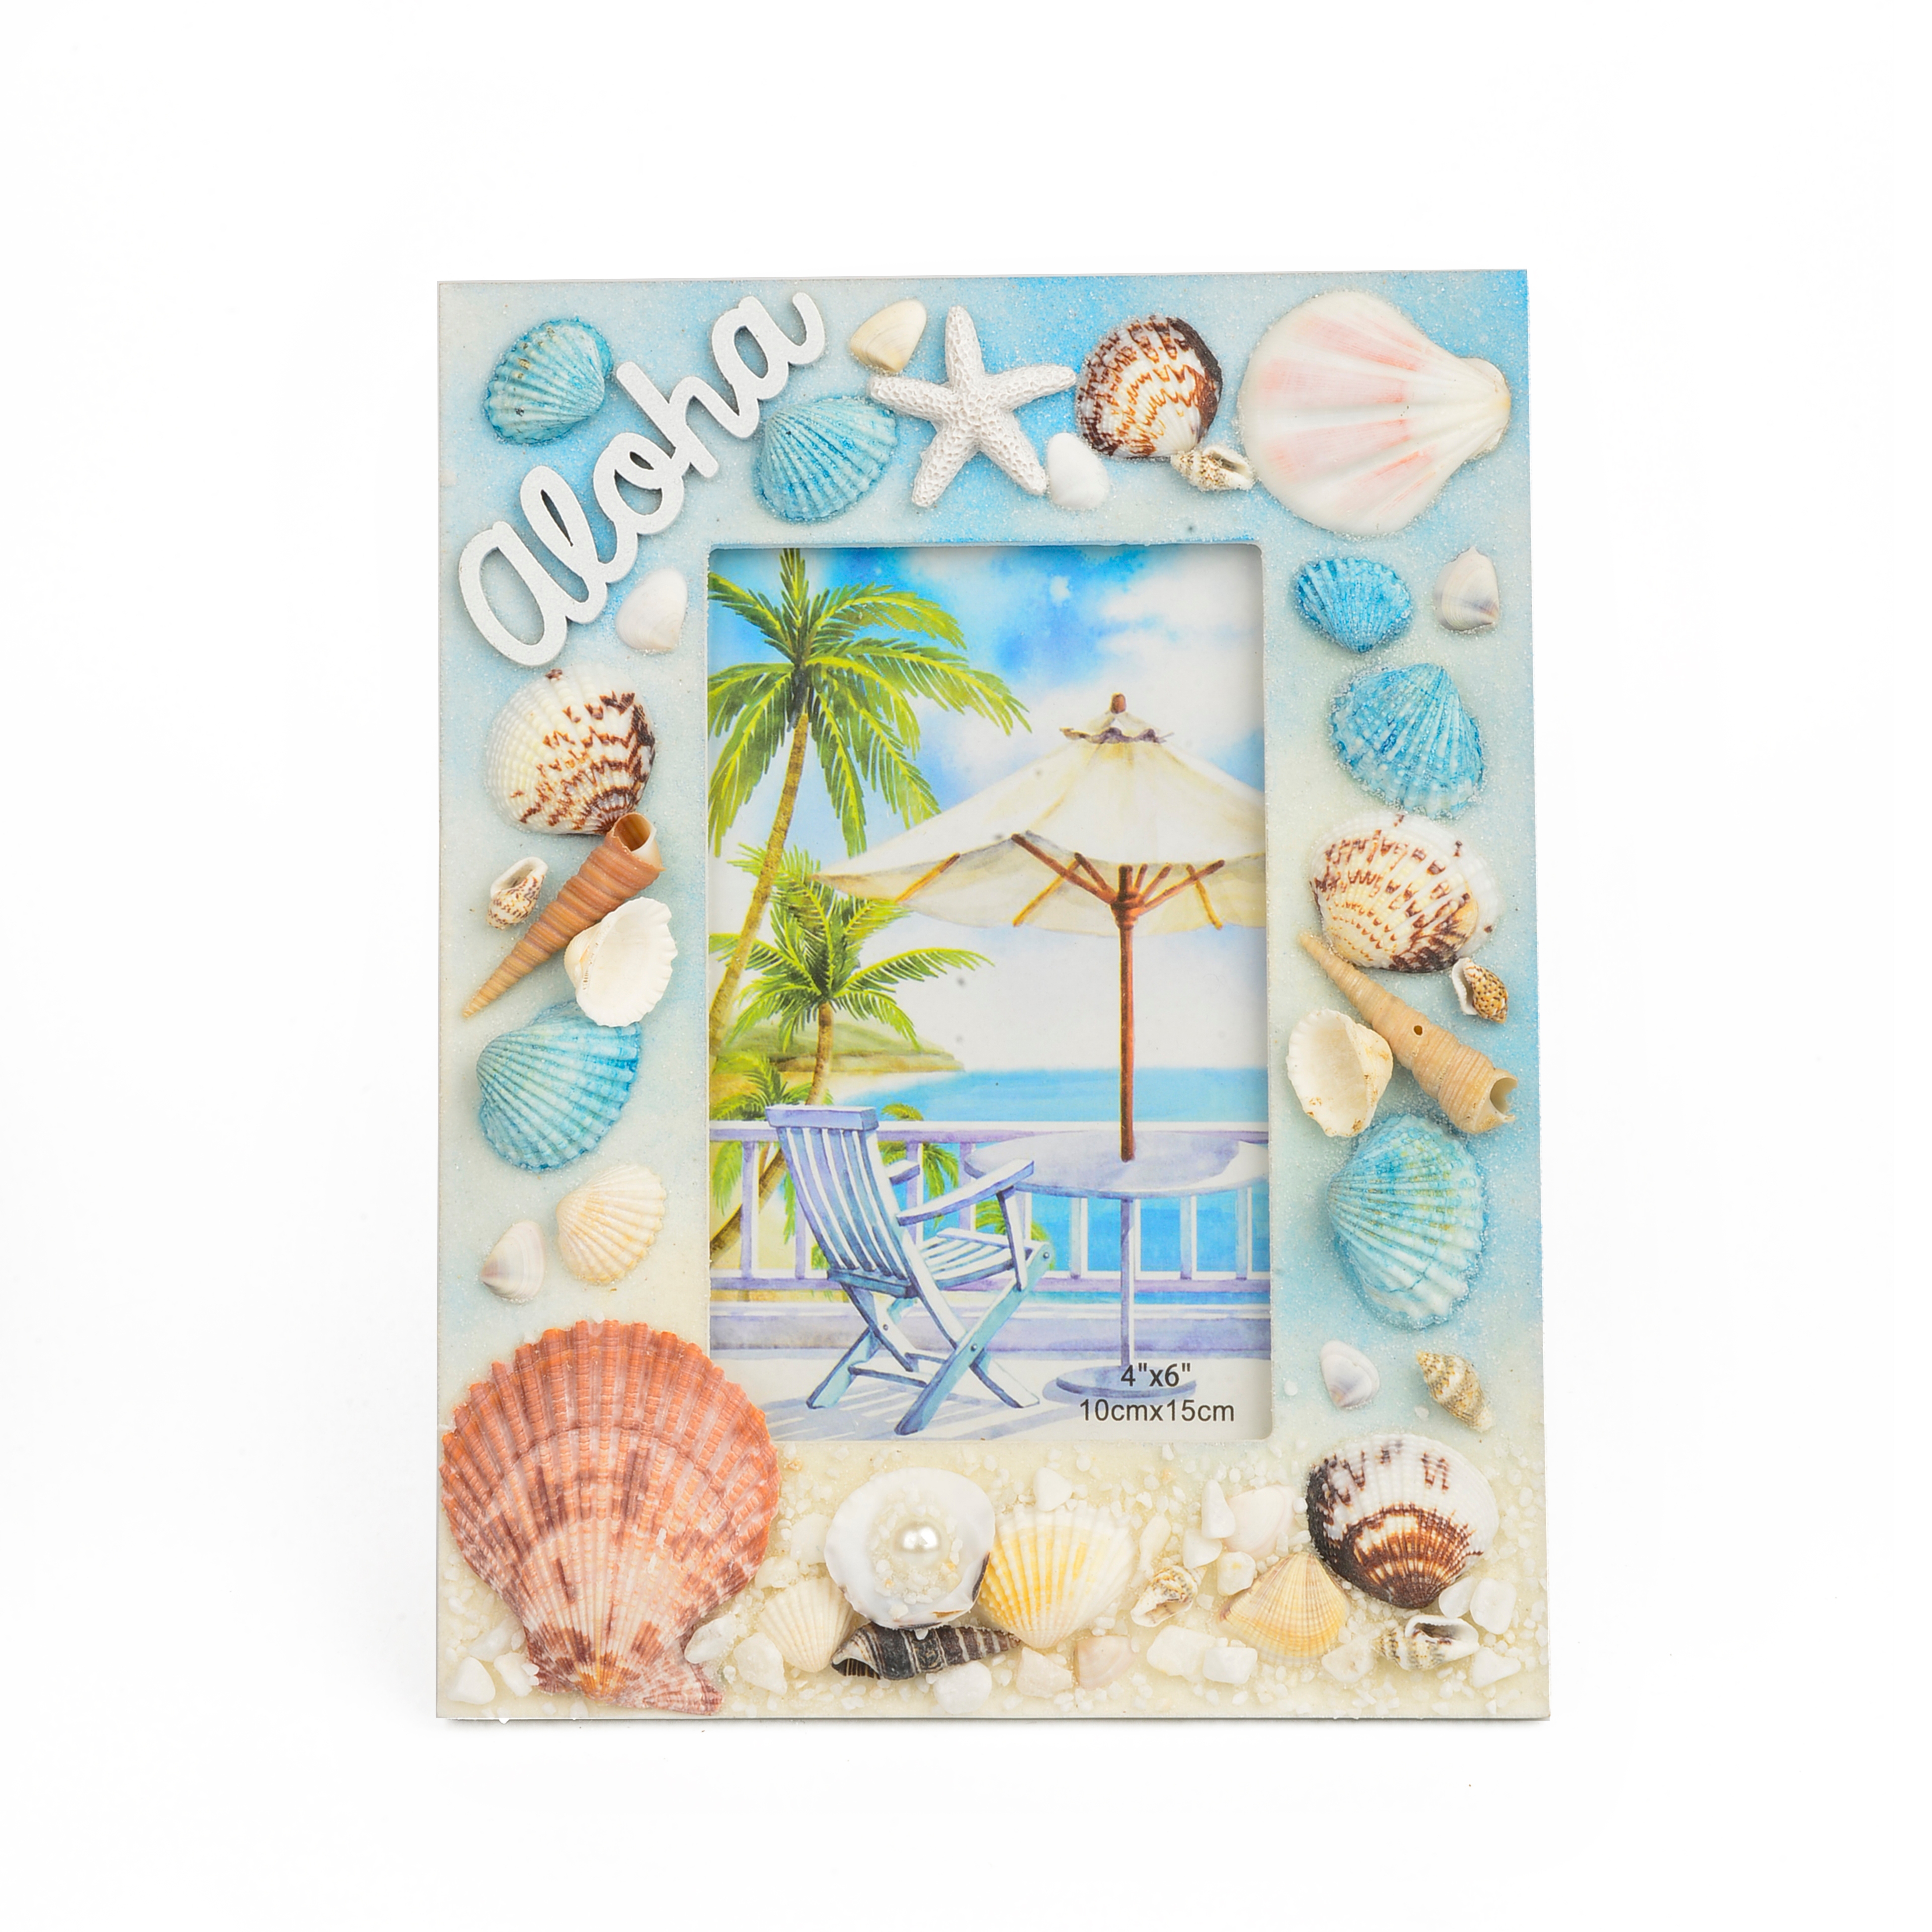 丽飞海洋系列旅游创意工艺品海滩贝壳海螺珊瑚工艺相框X0011